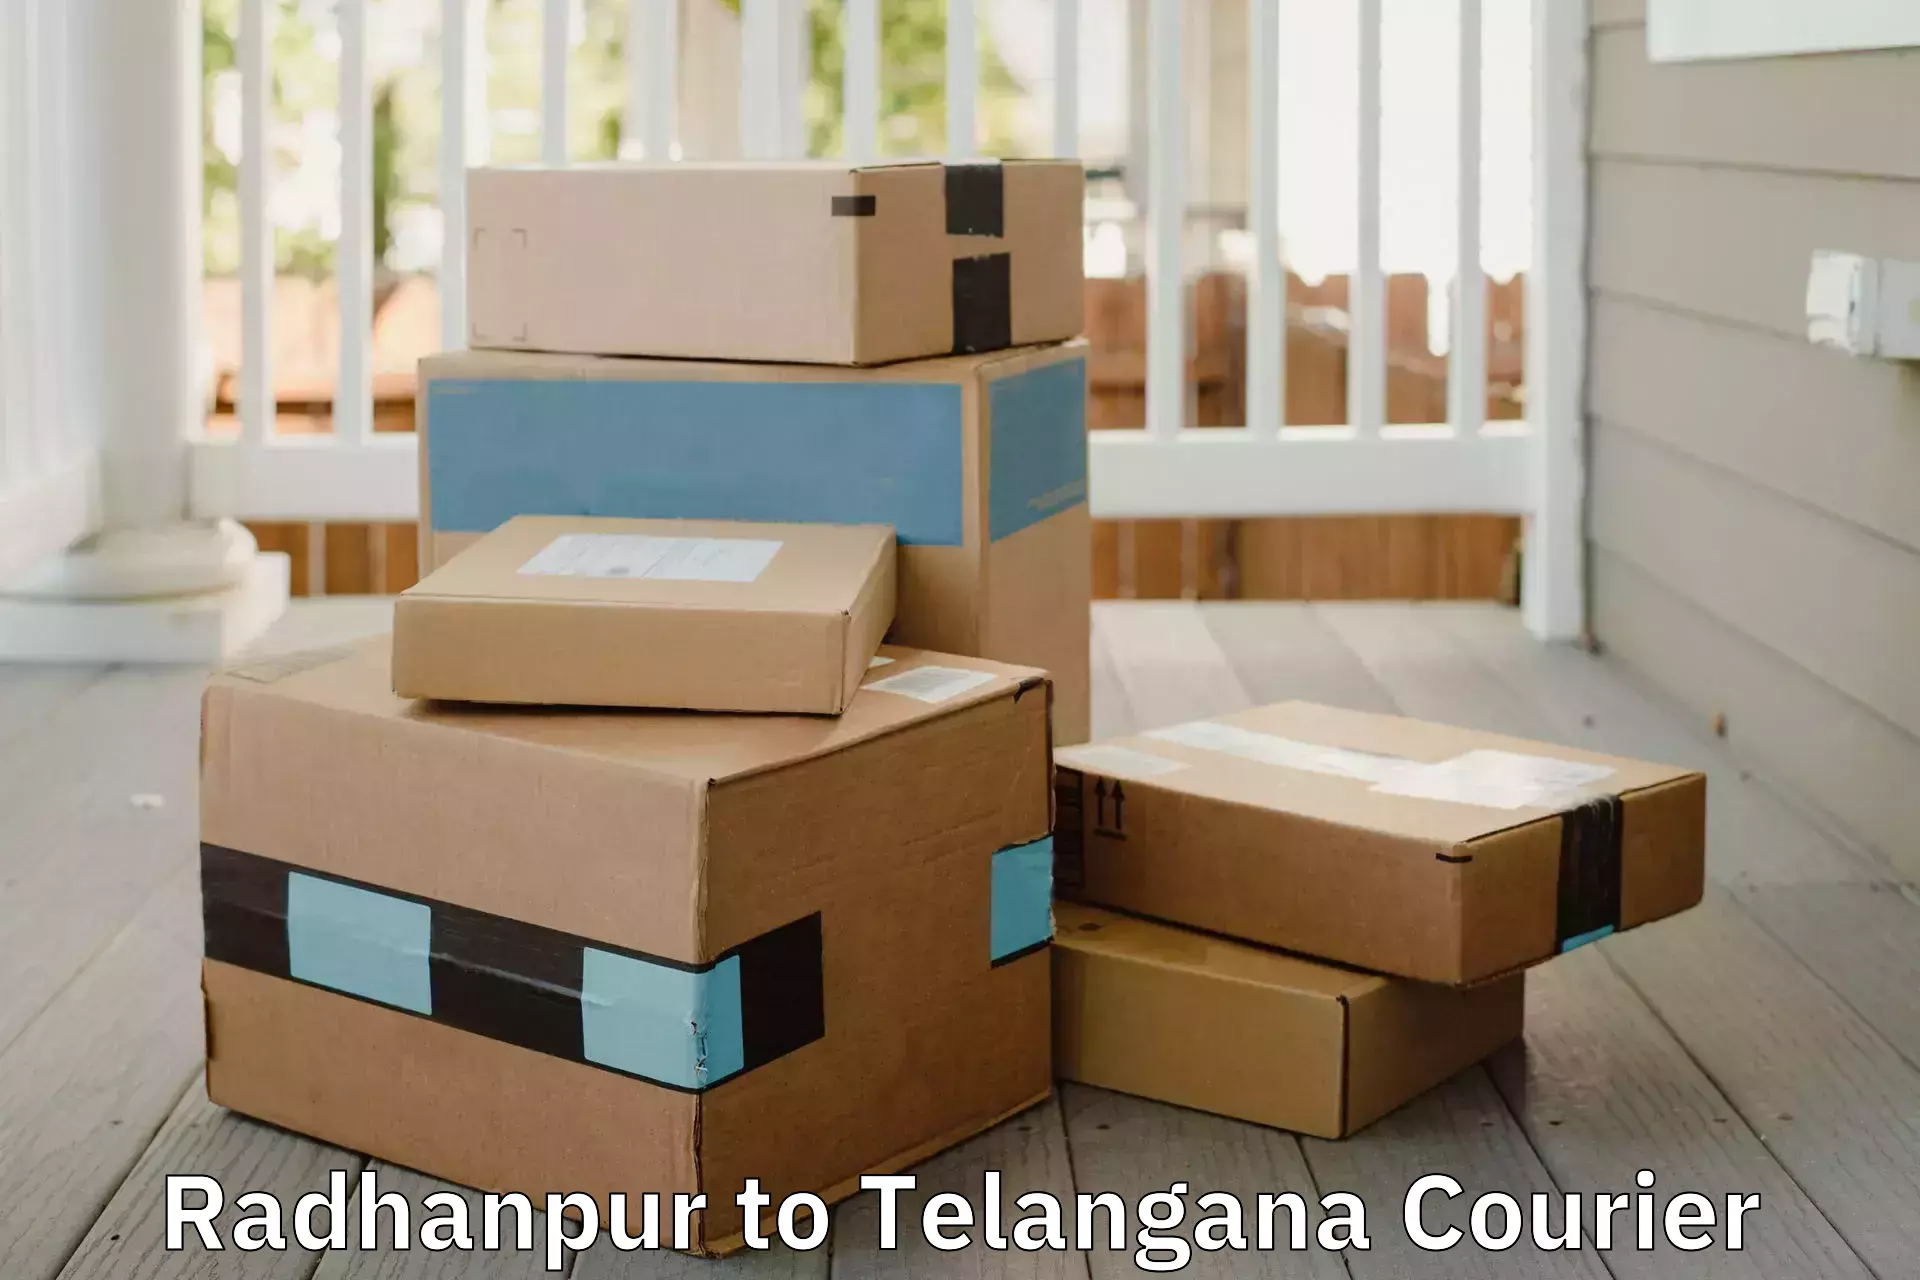 Furniture moving experts Radhanpur to Telangana